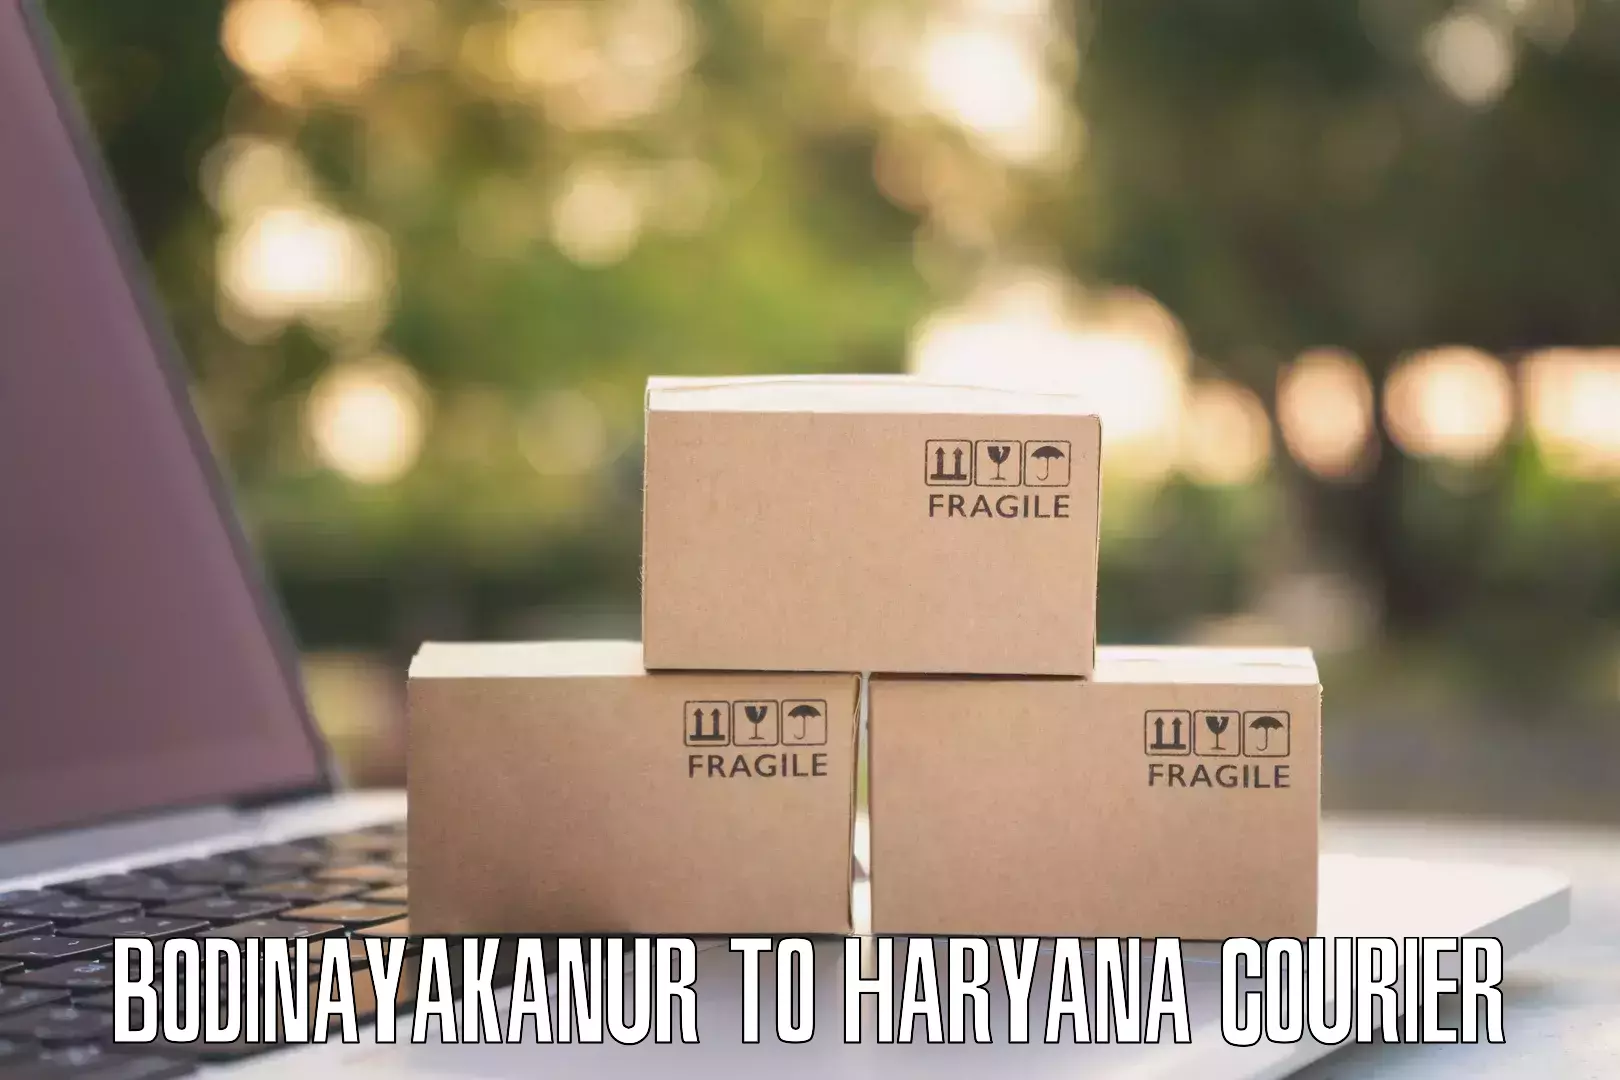 Smart courier technologies Bodinayakanur to Kurukshetra University